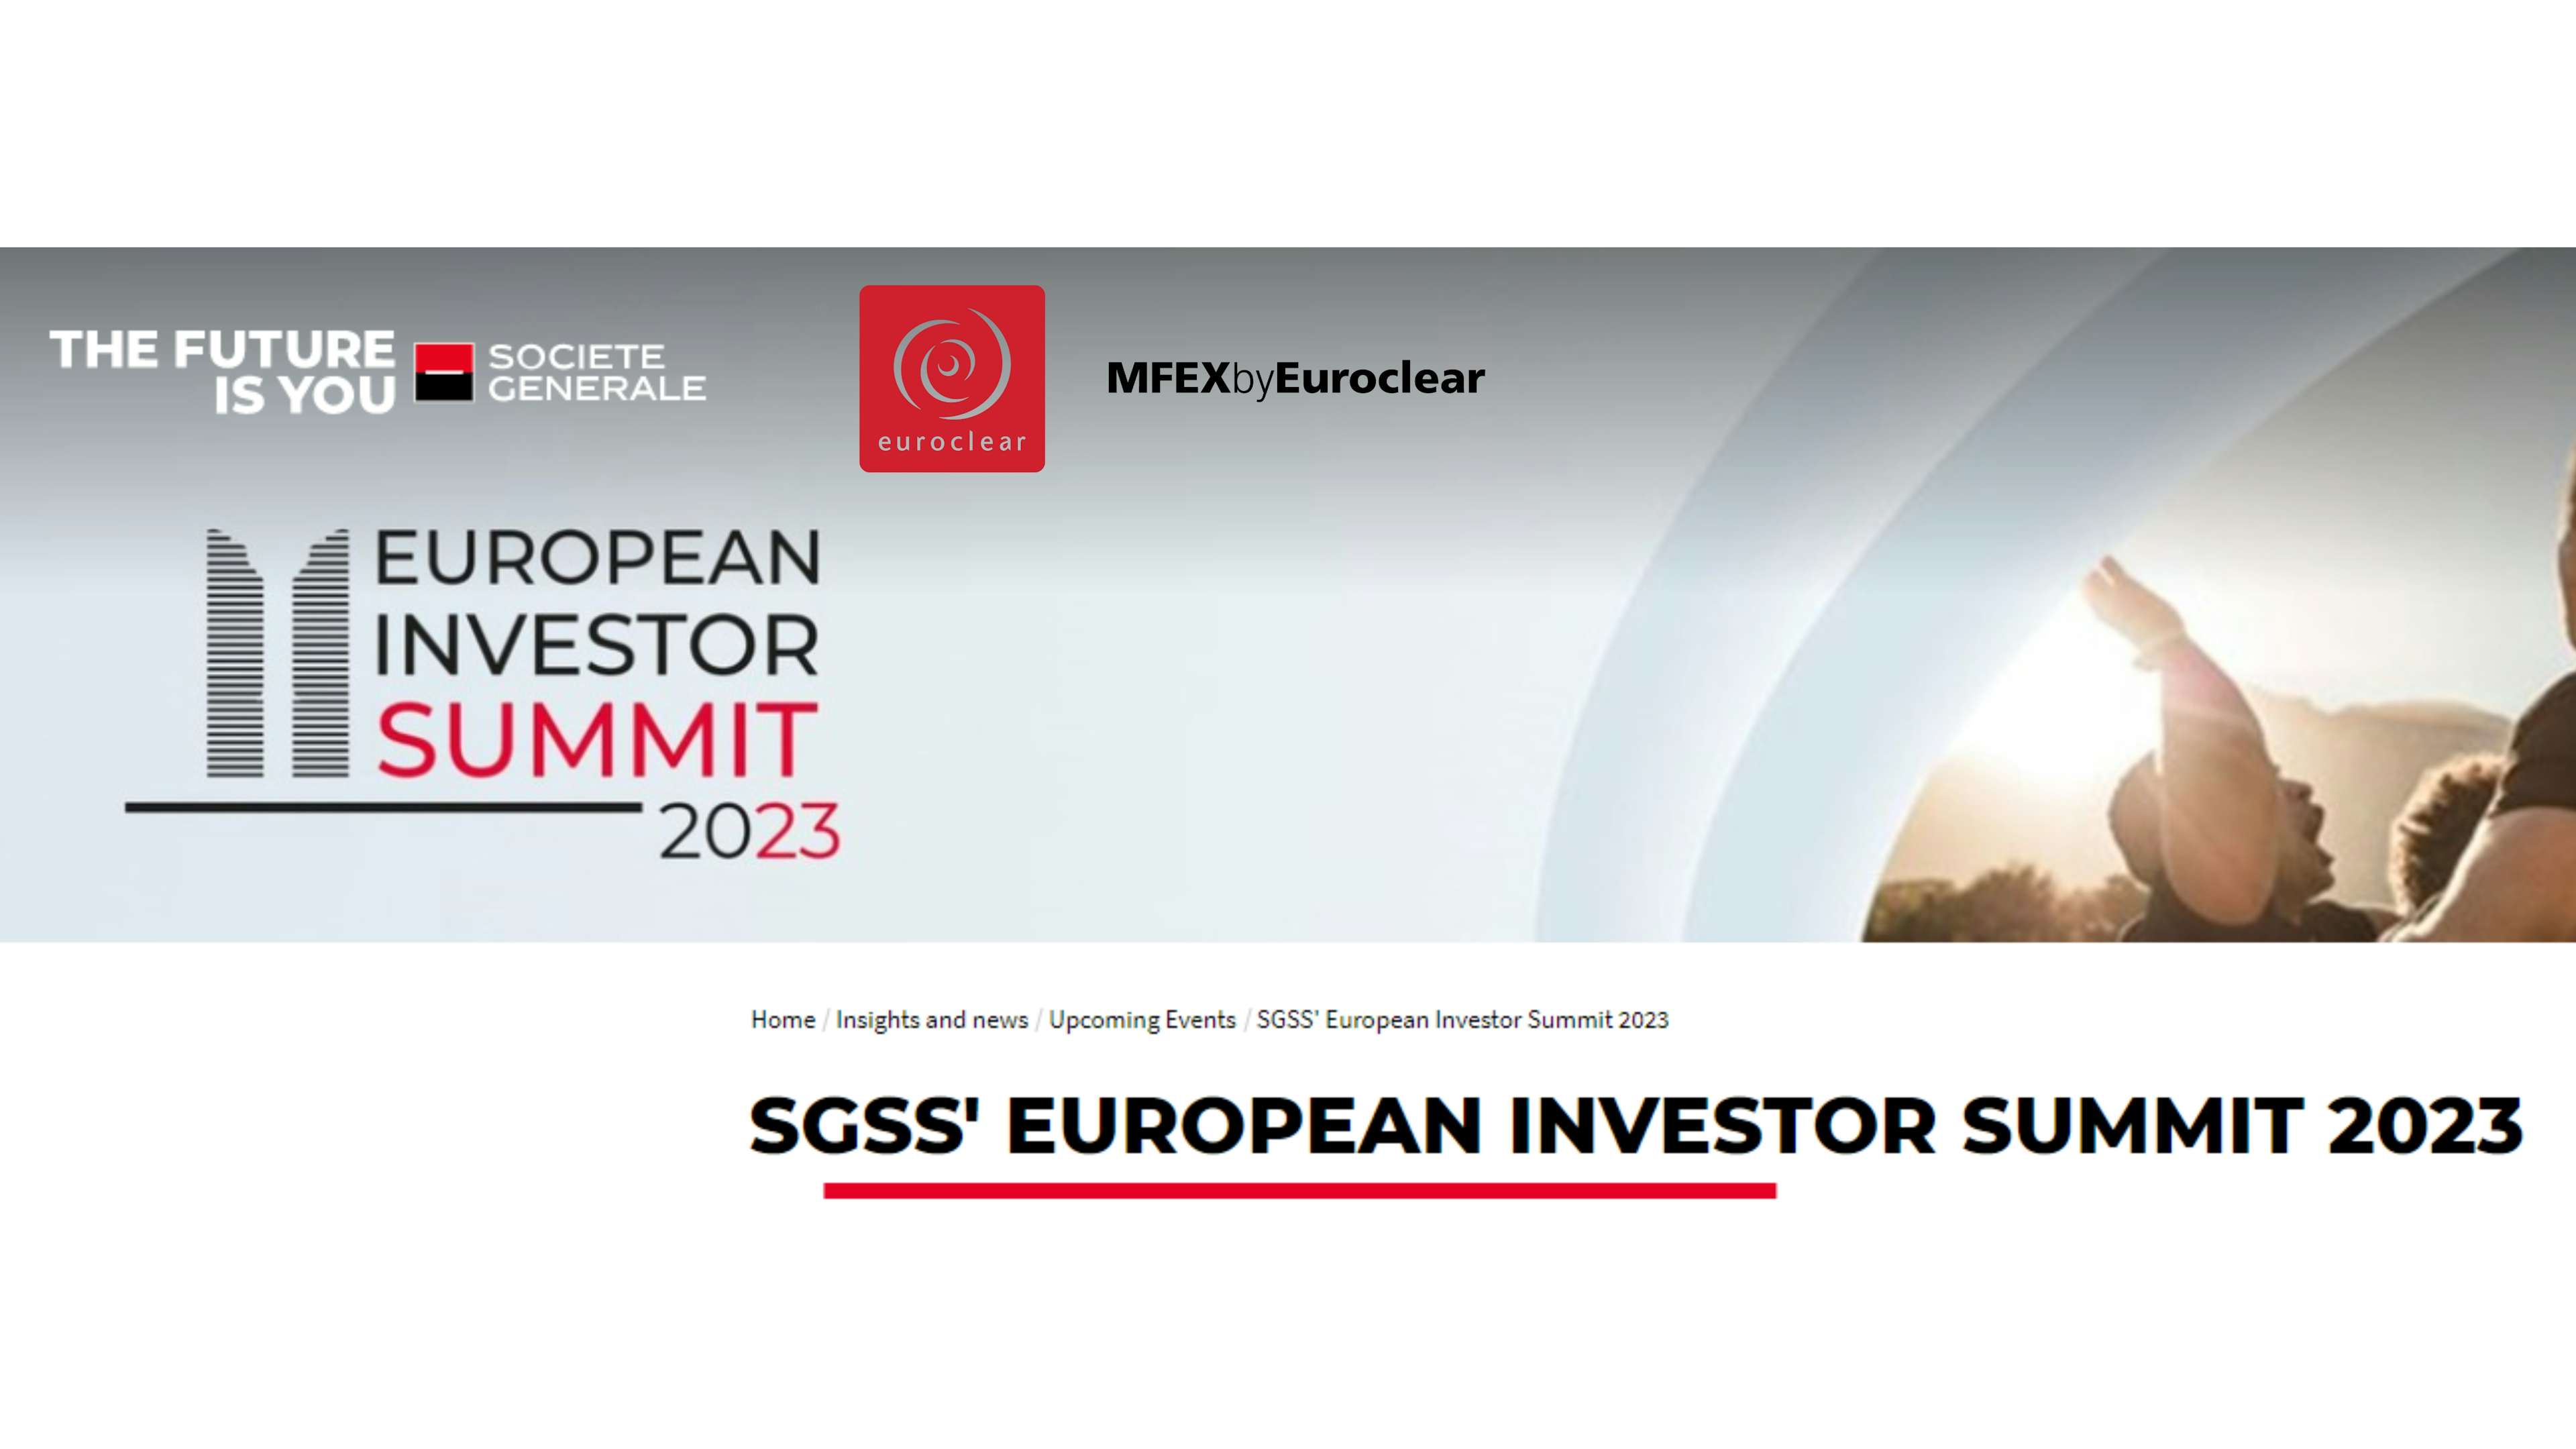 SGSS' EUROPEAN INVESTOR SUMMIT 2023